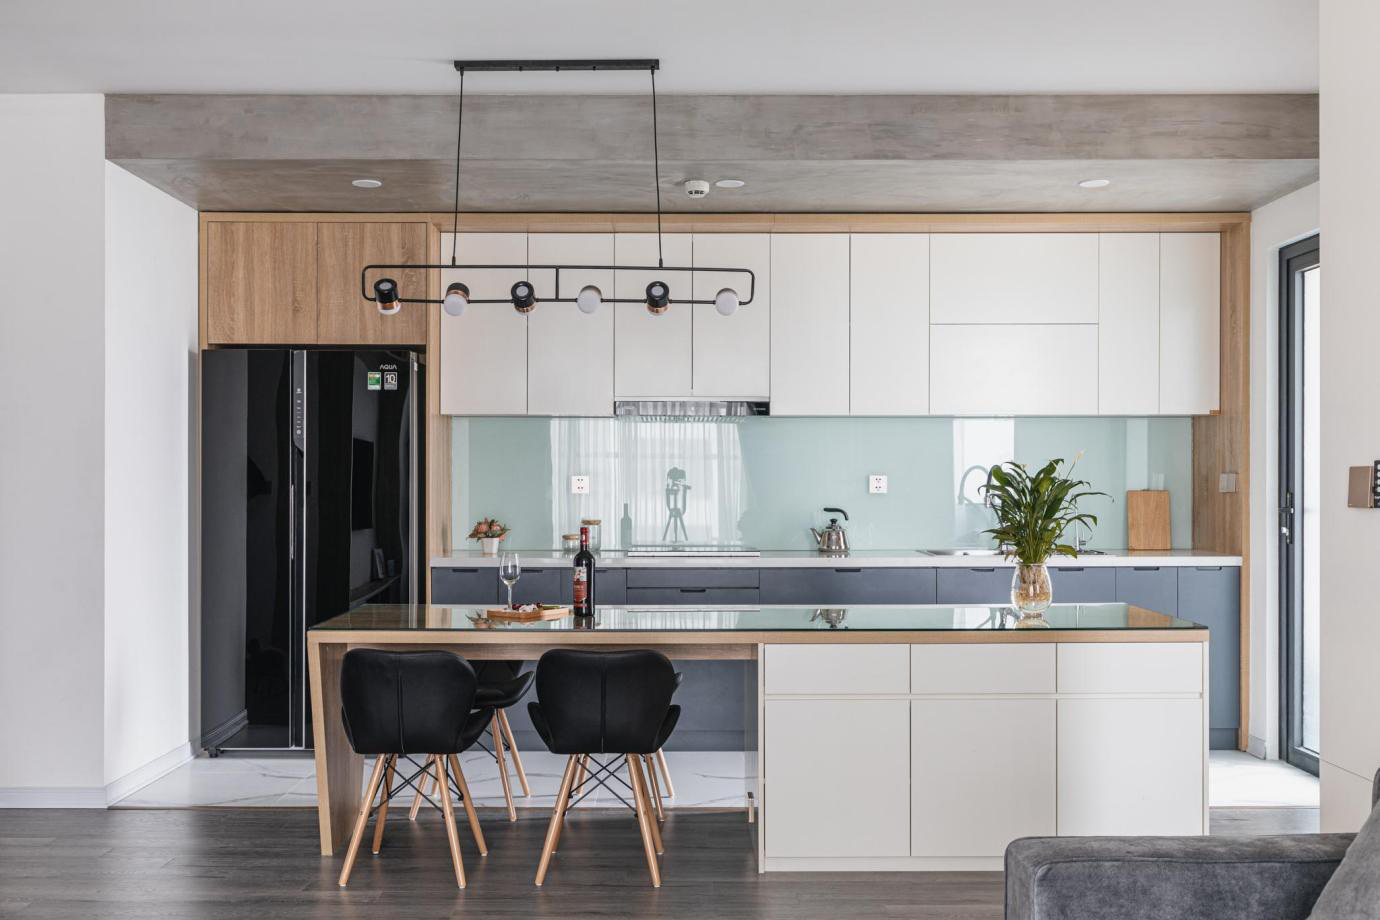 Giải pháp thiết kế nội thất chung cư liên thông phòng khách và bếp ấn tượng, hiệu quả - Ảnh 4.